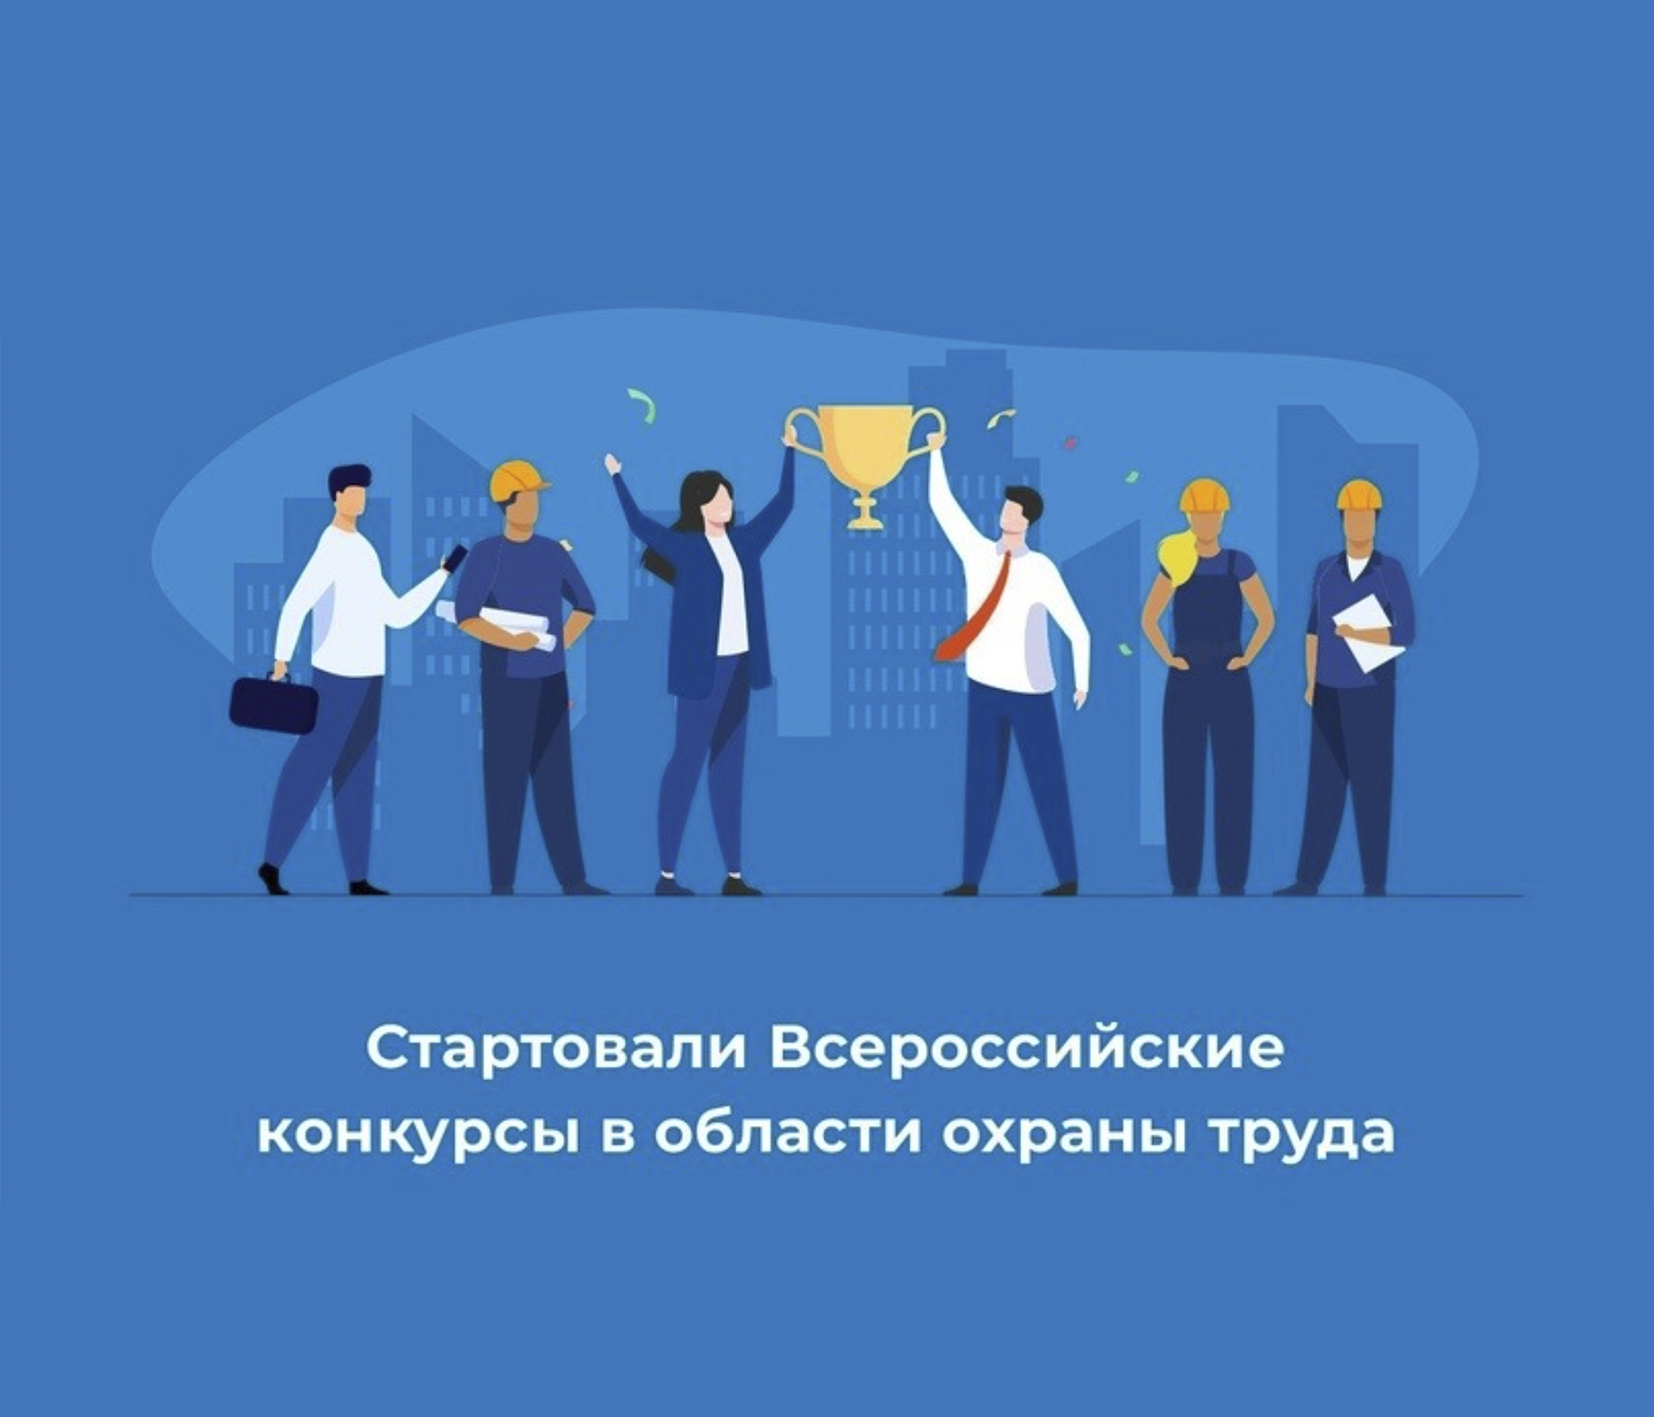 Приглашаем работодателей и специалистов по охране труда принять участие во Всероссийских конкурсах в области охраны труда.